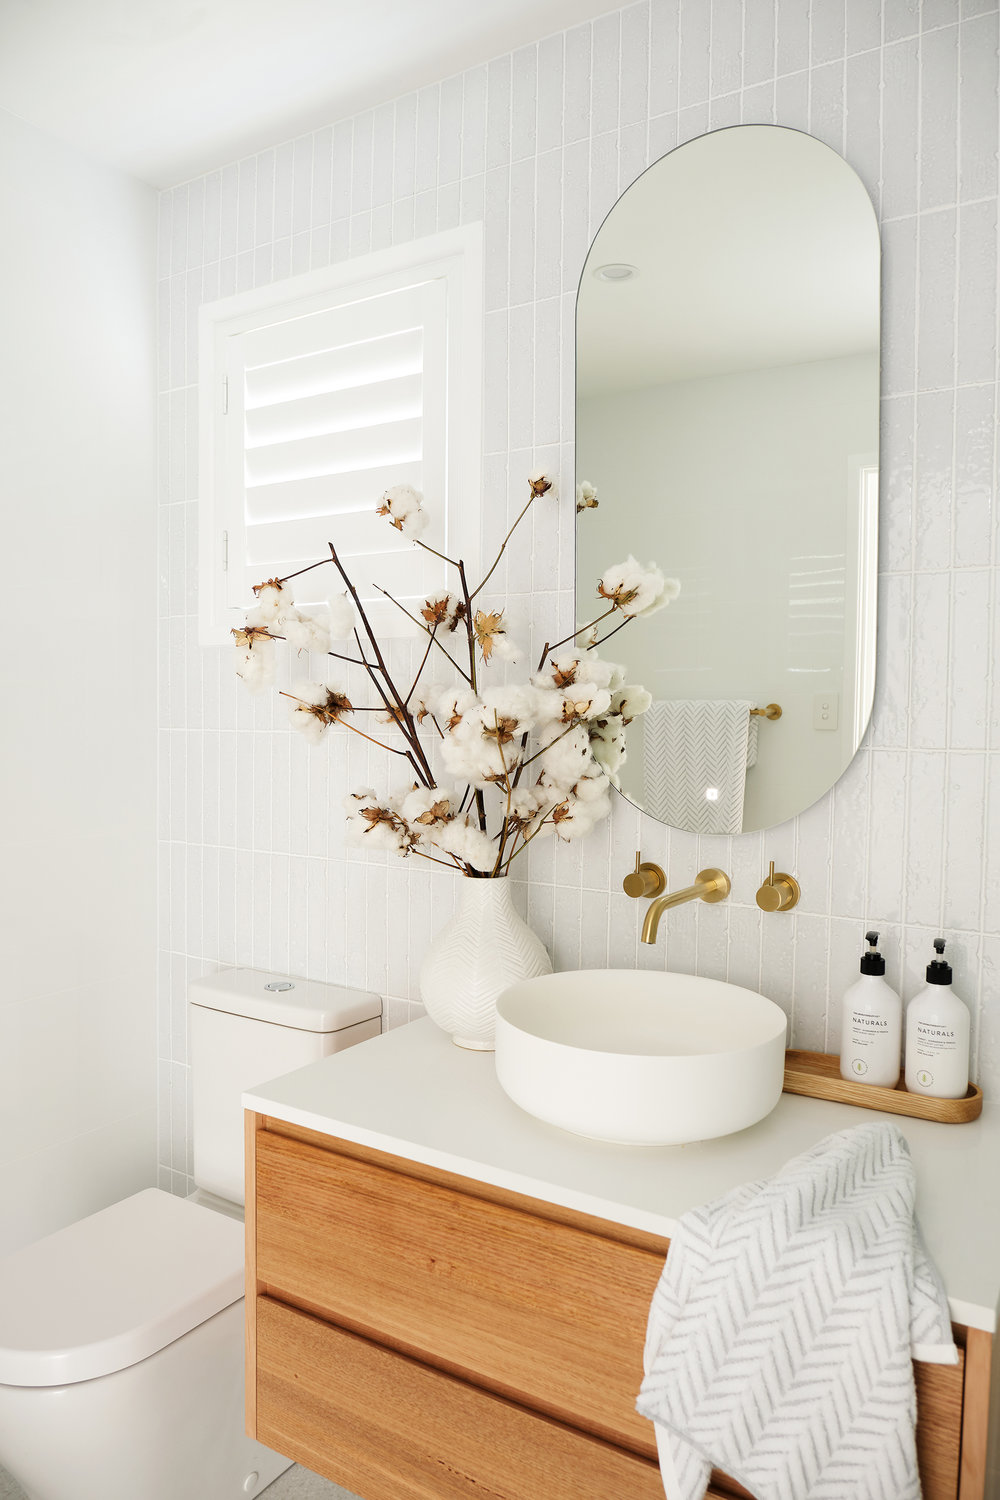 A különálló csaptelepek elegánsabbak, luxus hatást keltenek, különlegessé teszik a fürdőszobát.